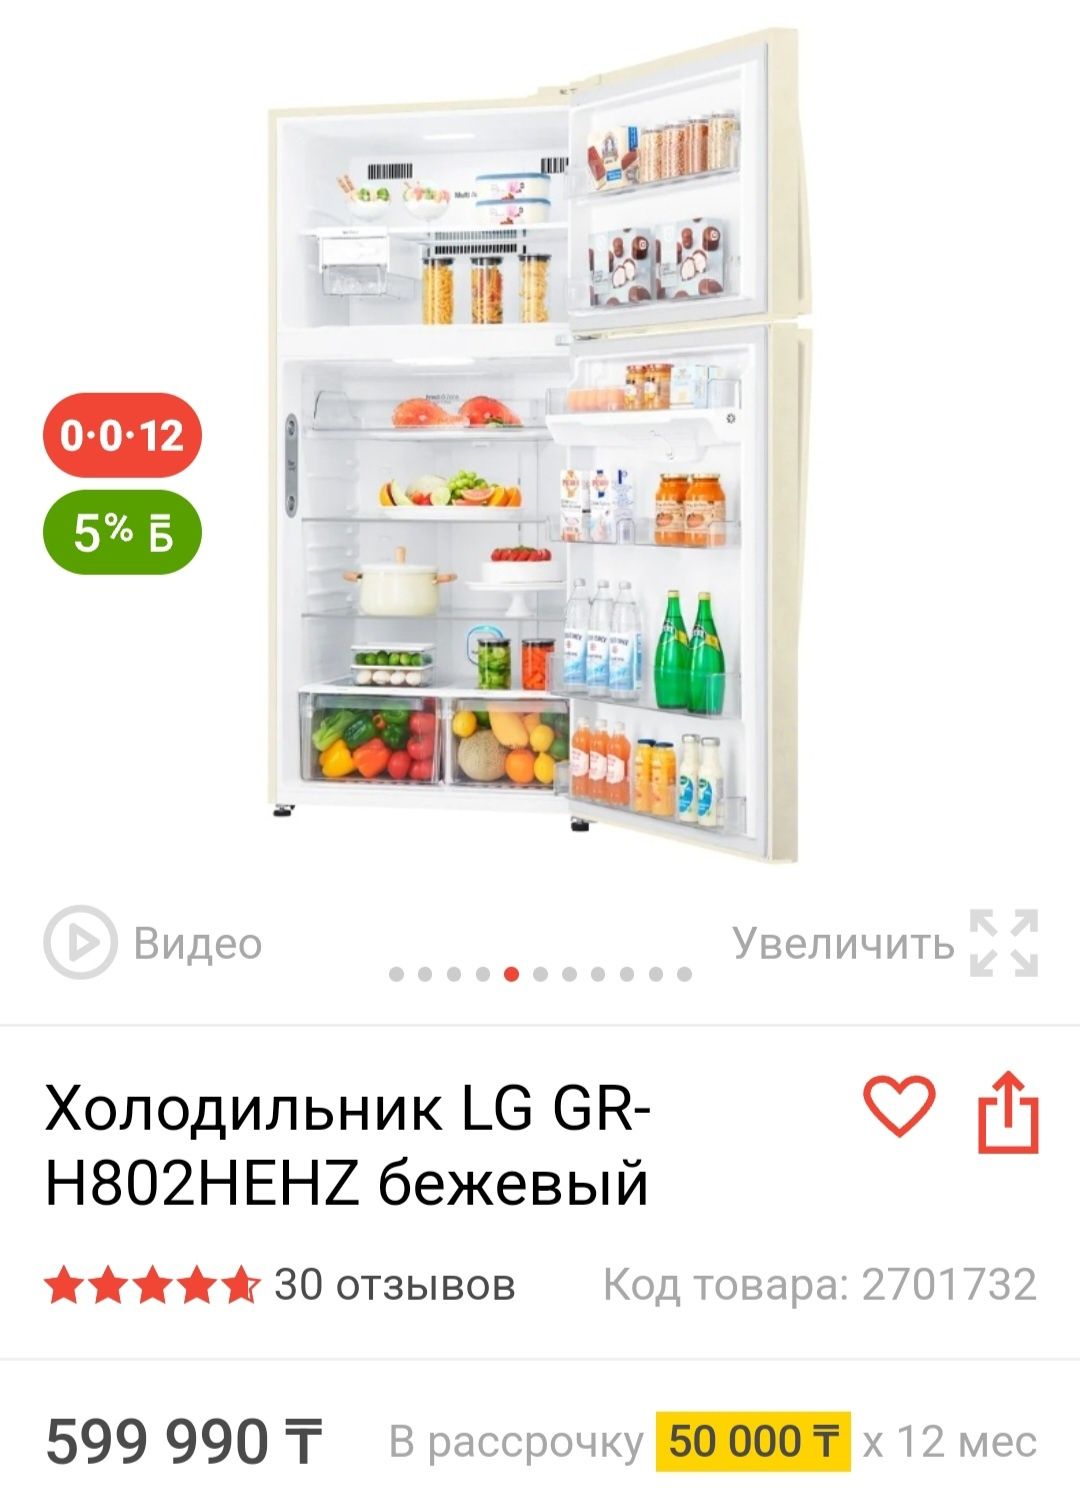 Большой холодильник LG